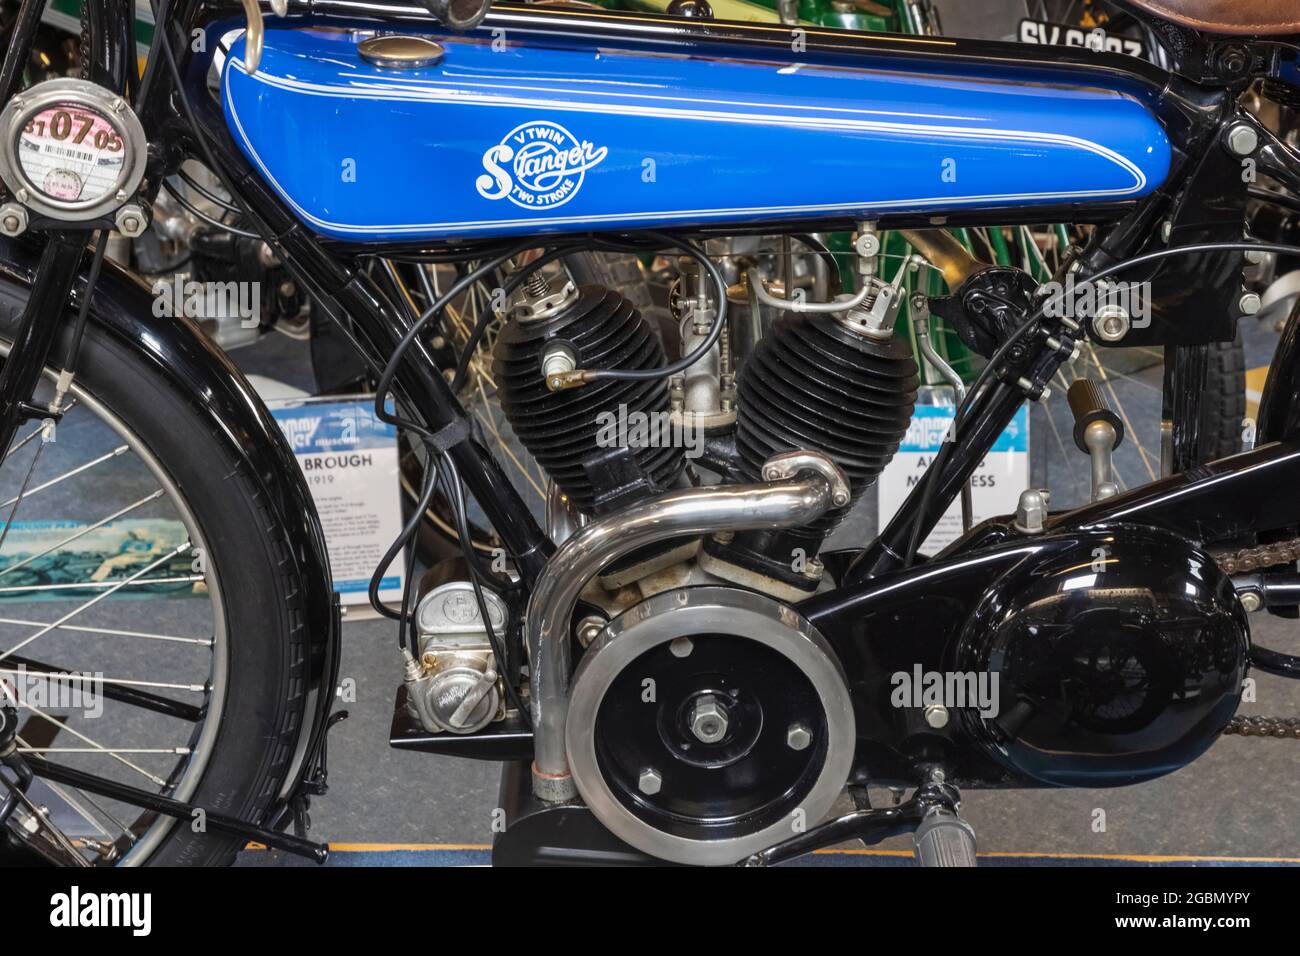 Inghilterra, Hampshire, New Forest, New Milton, il museo delle motociclette di Sammy Miller, dettaglio di un motore per motociclette Stanger del 1920 Foto Stock